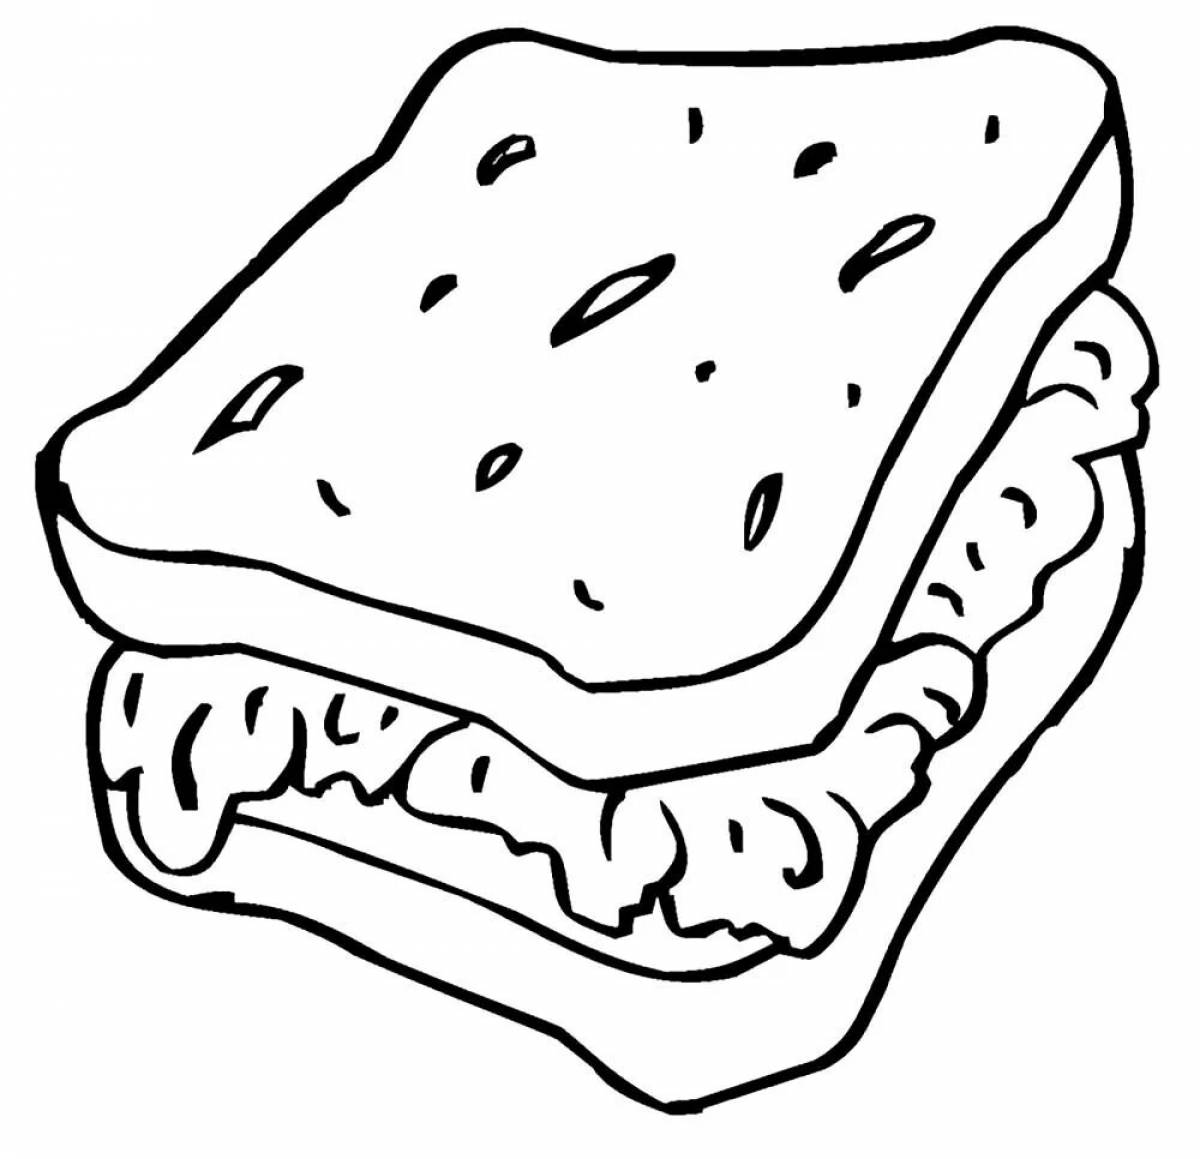 Children's sandwich #25